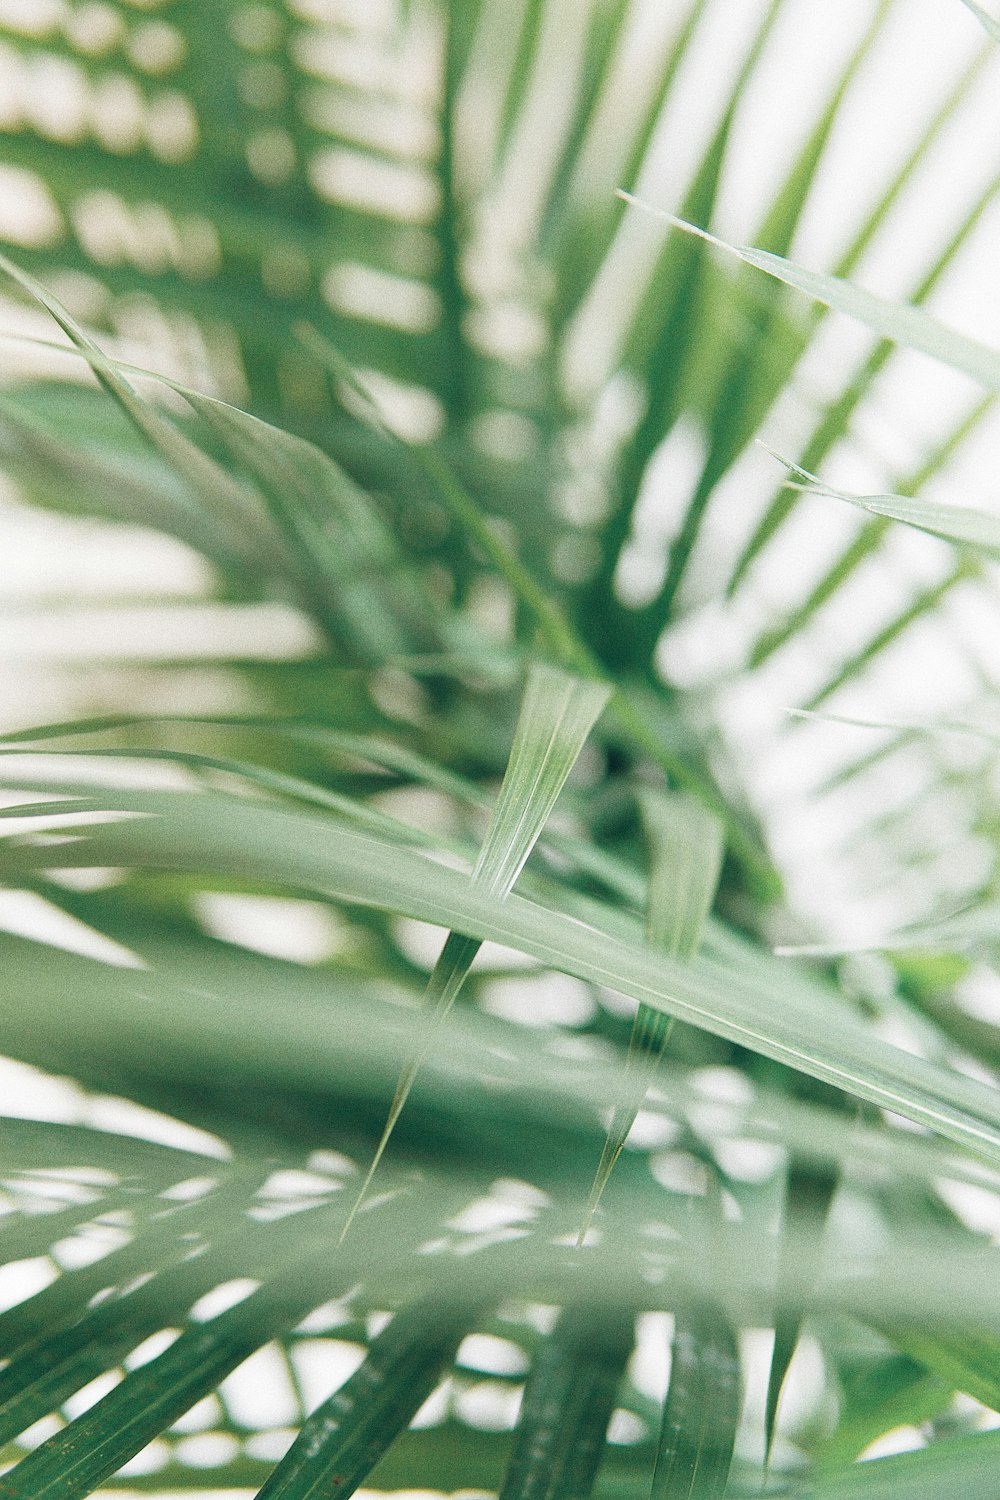 Fotografía de primer plano de hojas de palma verde